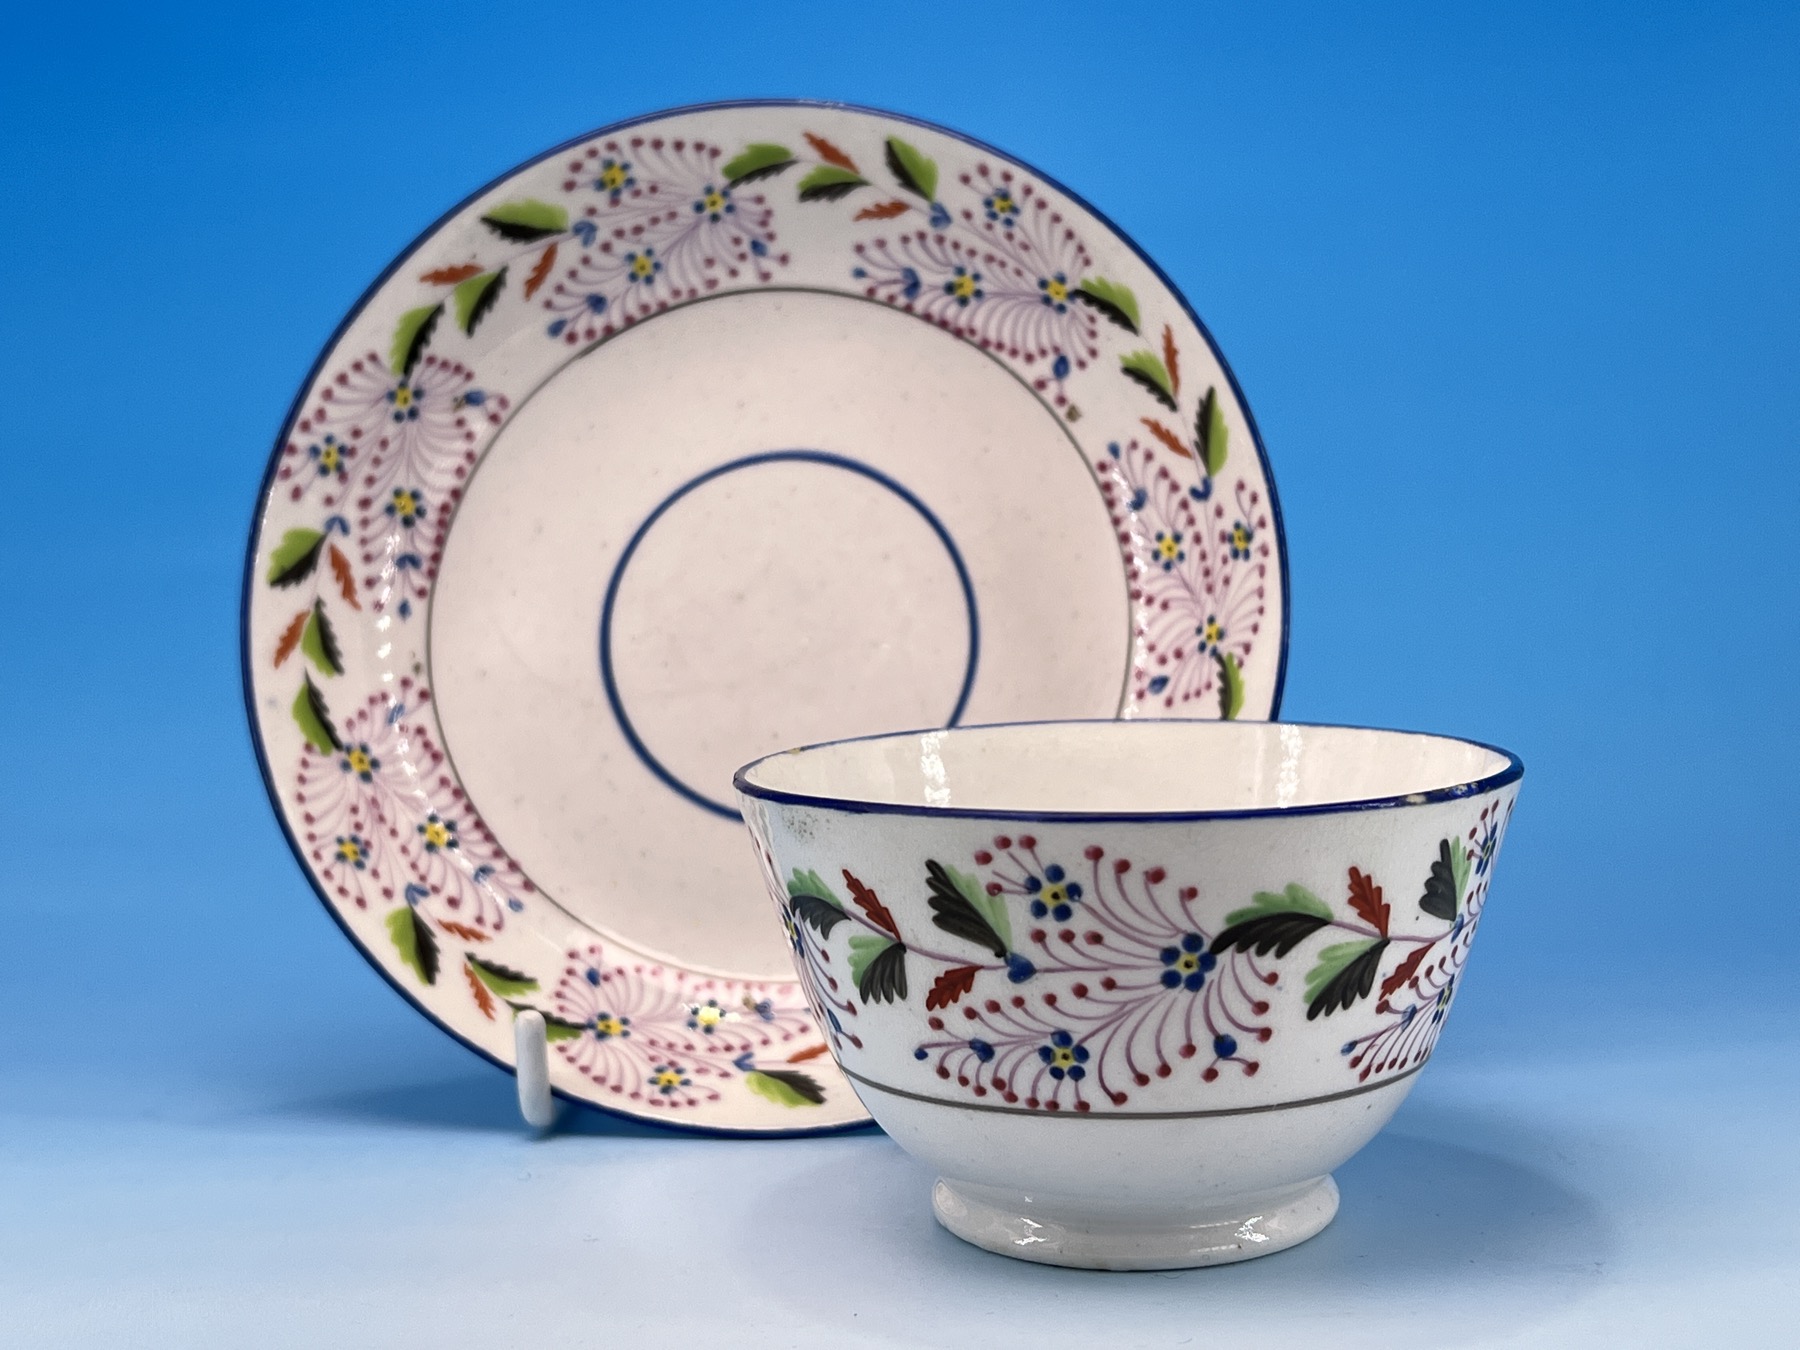 Machin porcelain tea bowl & saucer, pat. 19, circa 1810